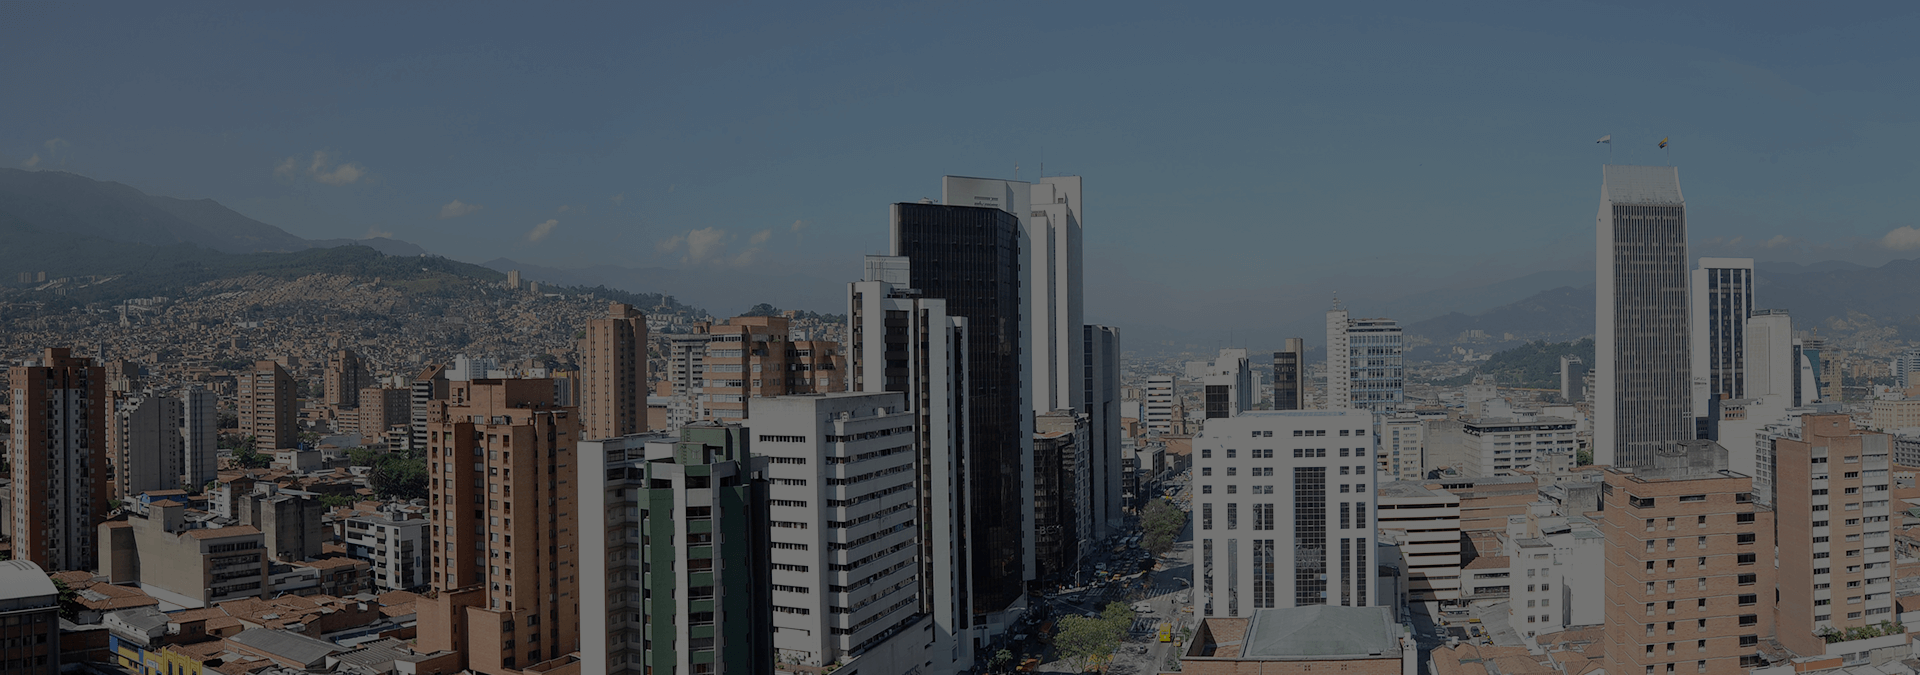 Vista panorámica de edificios en la ciudad de Bogotá